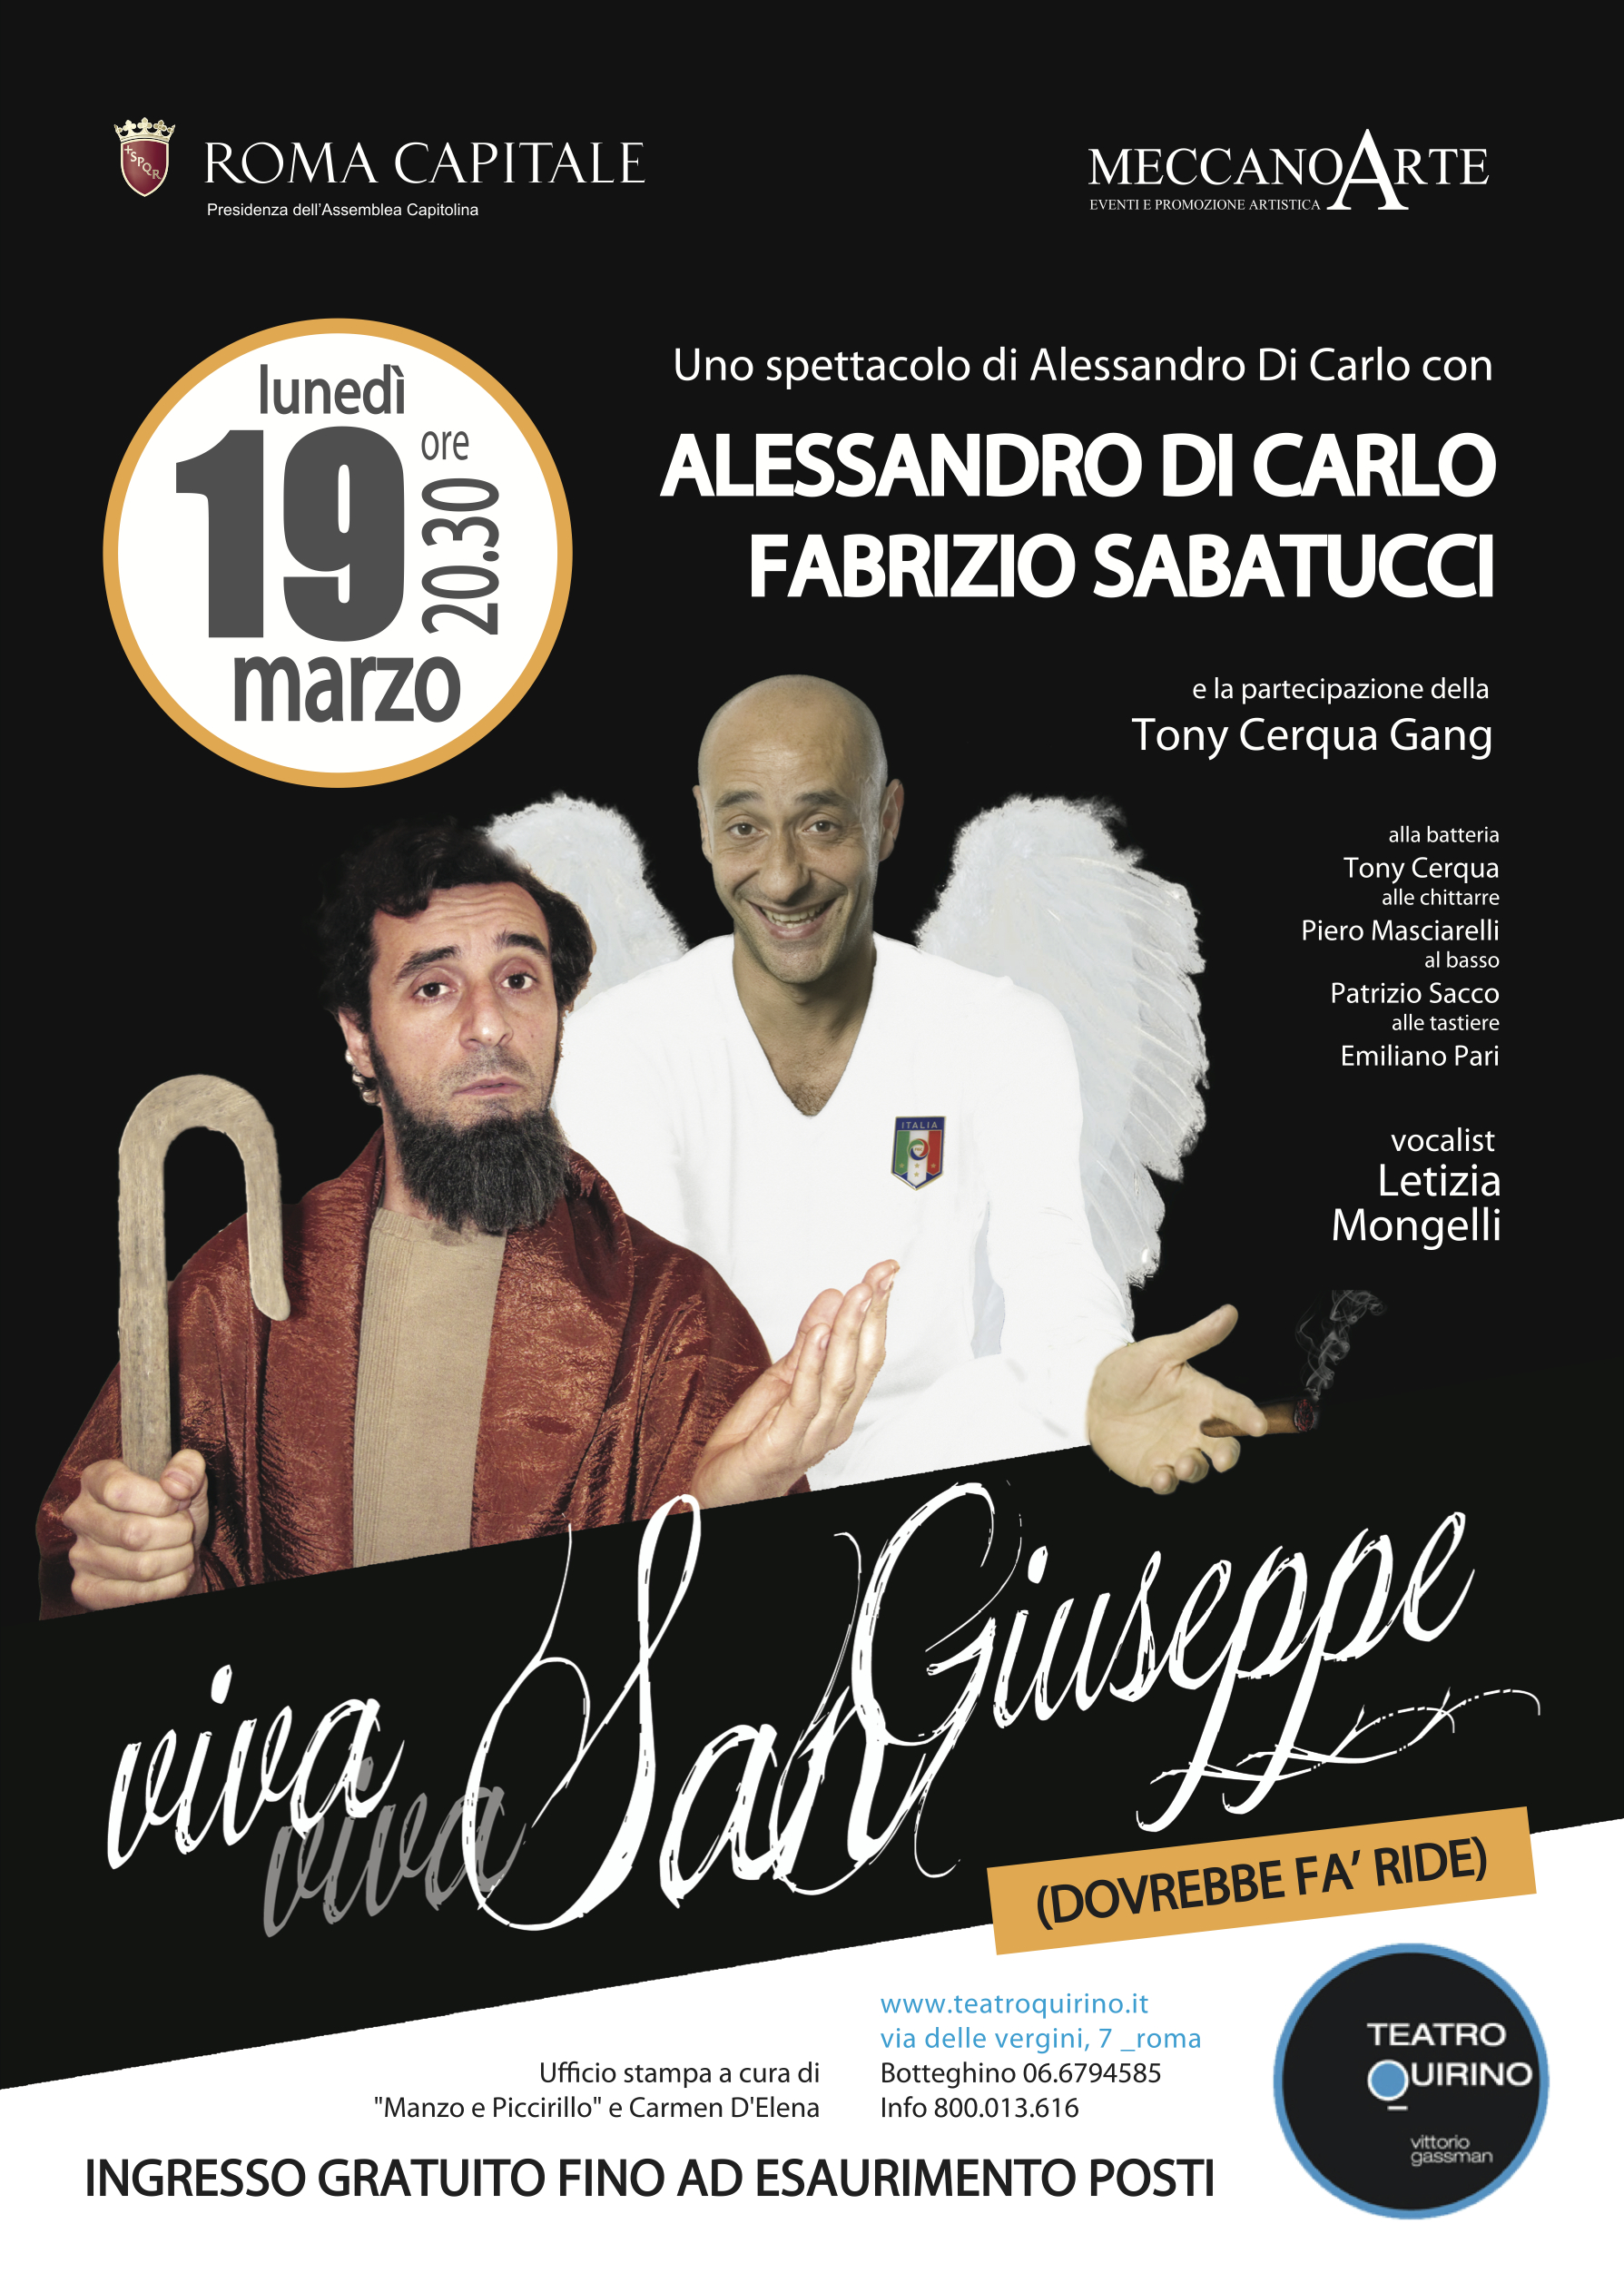 Cultura.  “Viva Viva San Giuseppe” al teatro Quirino di Roma